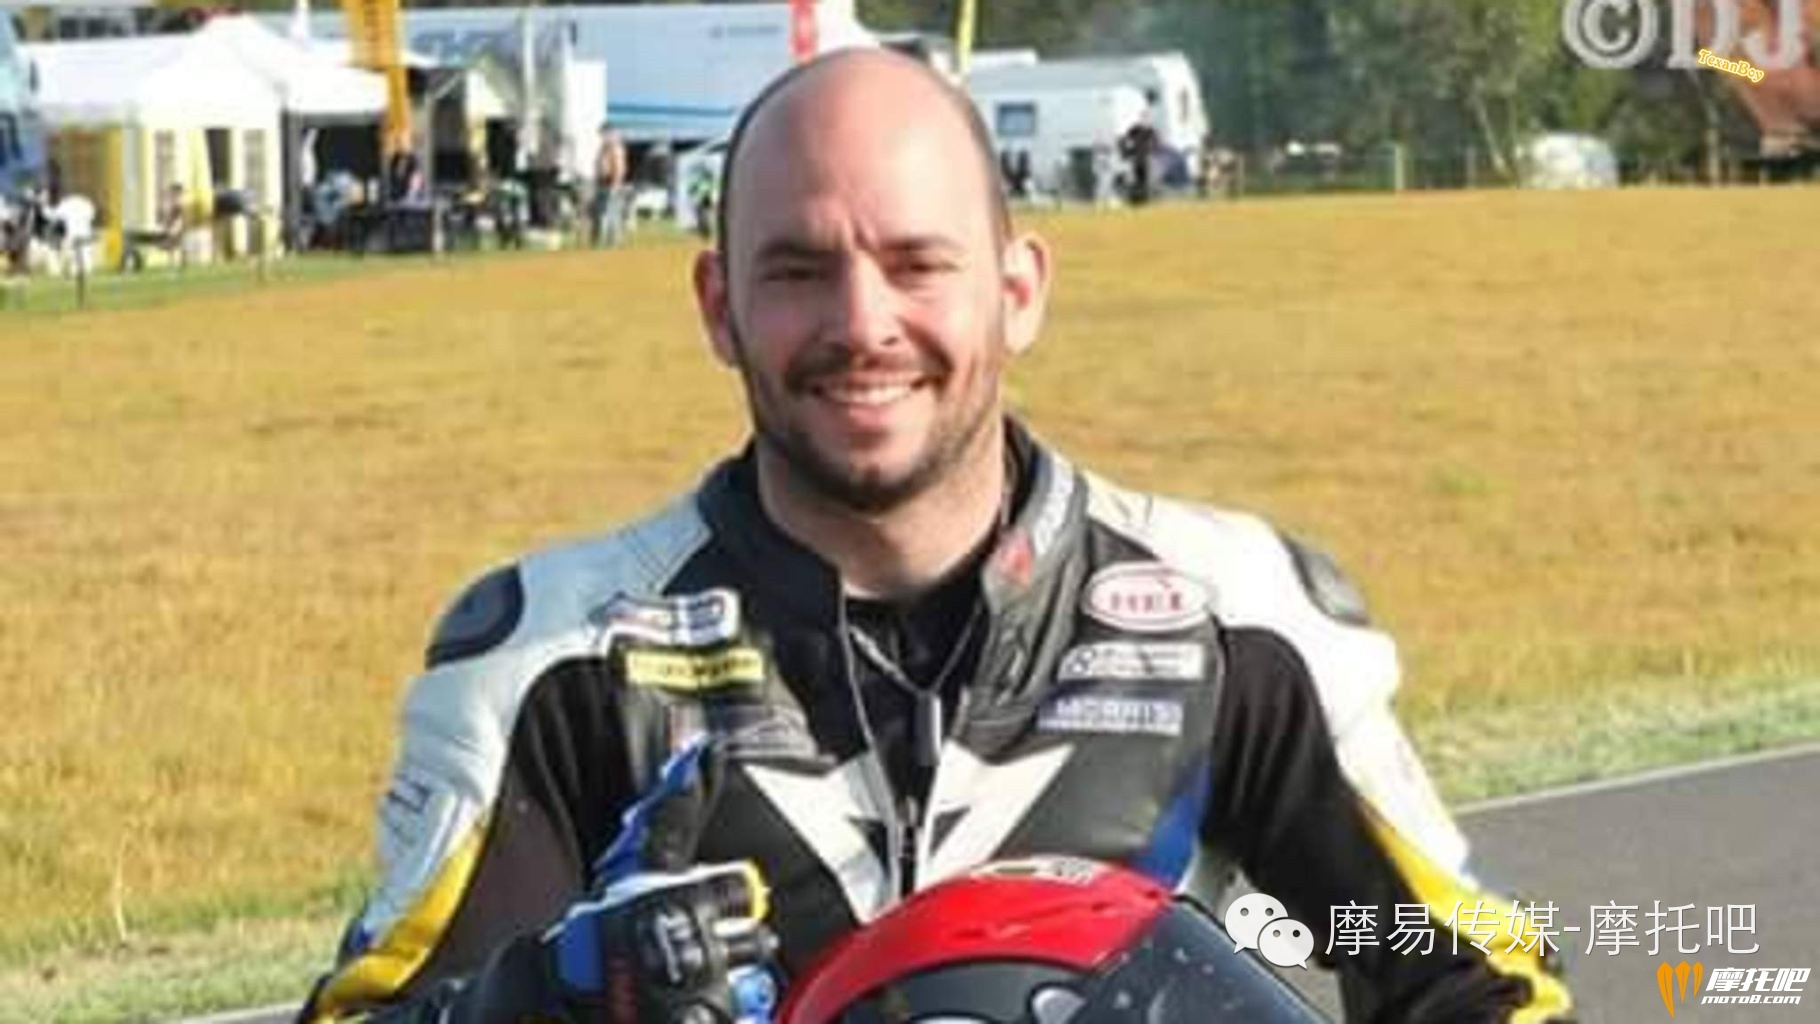 摩闻 - 法国车手在 “英国曼岛TT” 遭遇车祸身亡